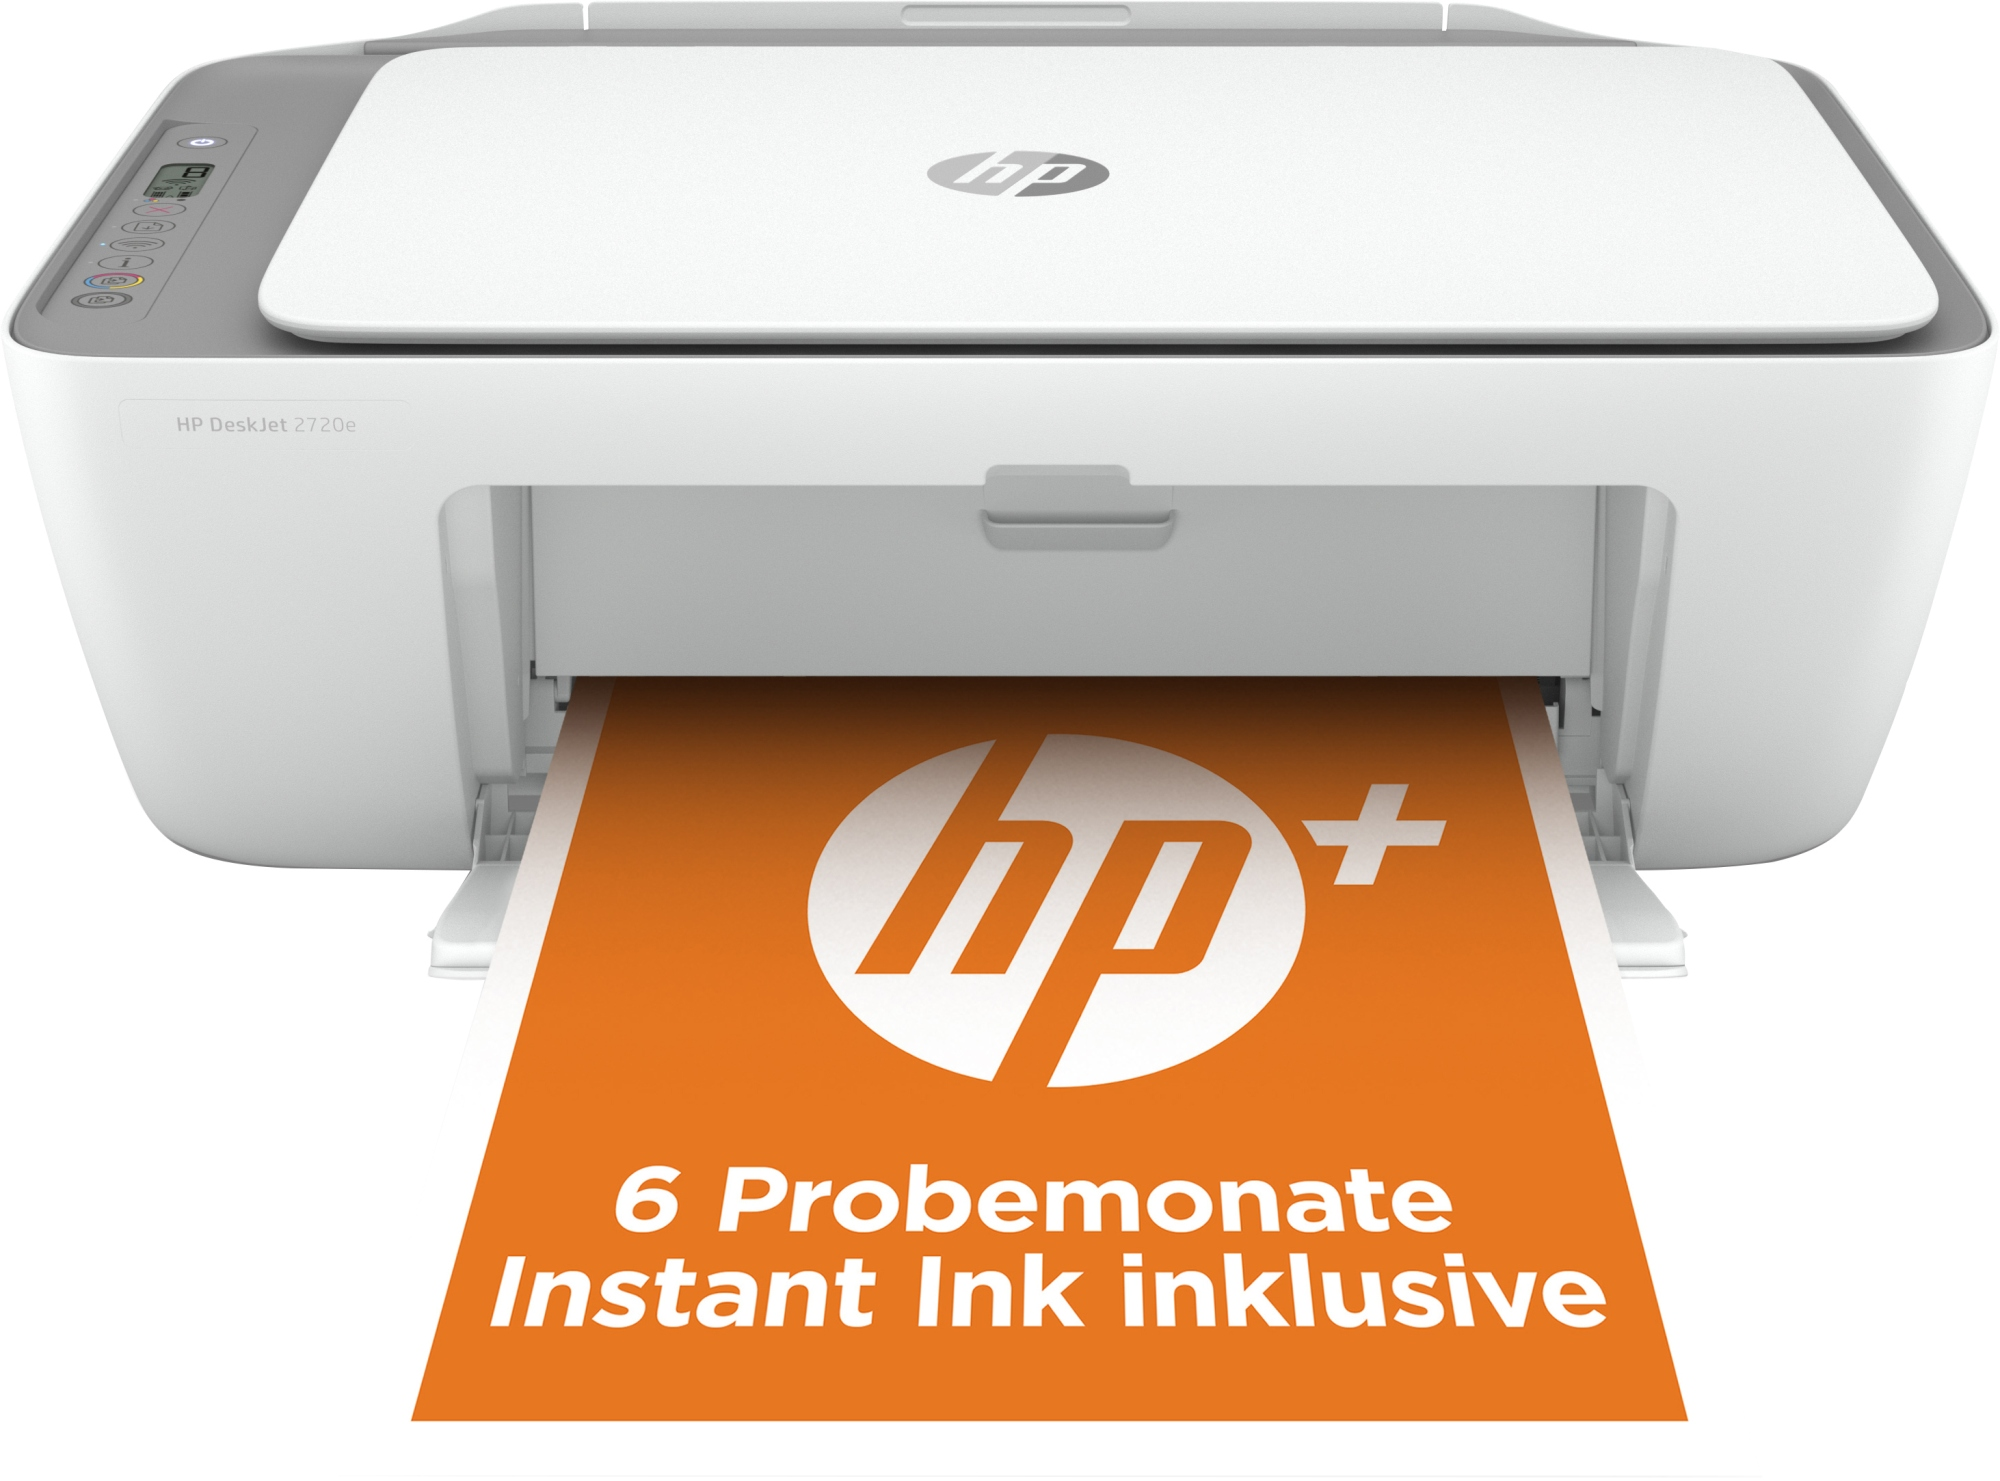 Impresora multifuncional - DESKJET 2720E HP, Inyección de tinta térmica, 4800x1200, Gris y Blanco